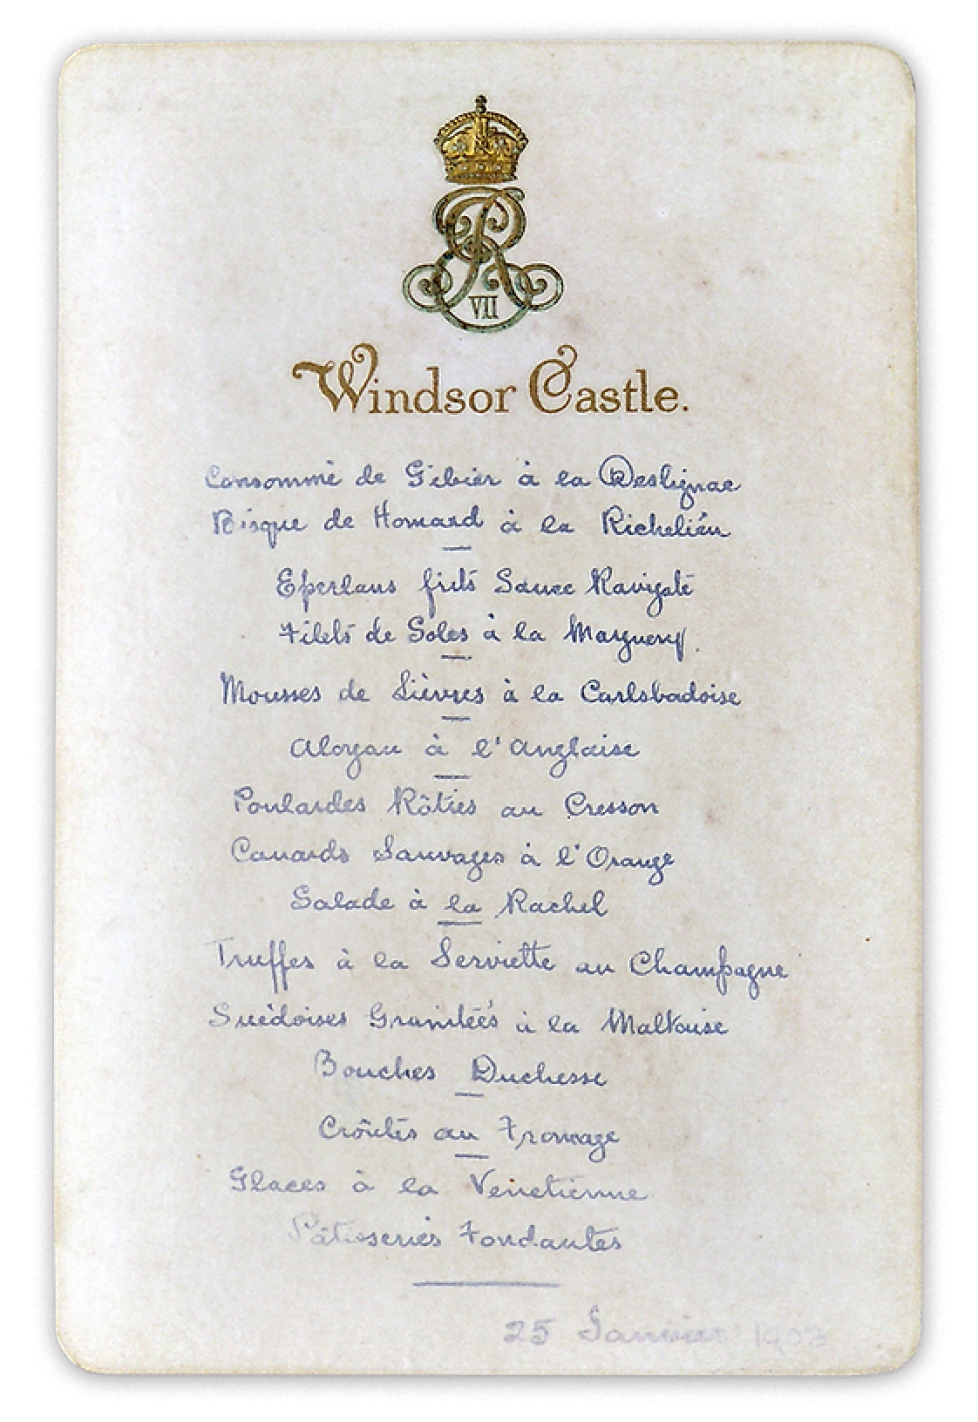 EVII - menu = windsor - 25 January 1903.png